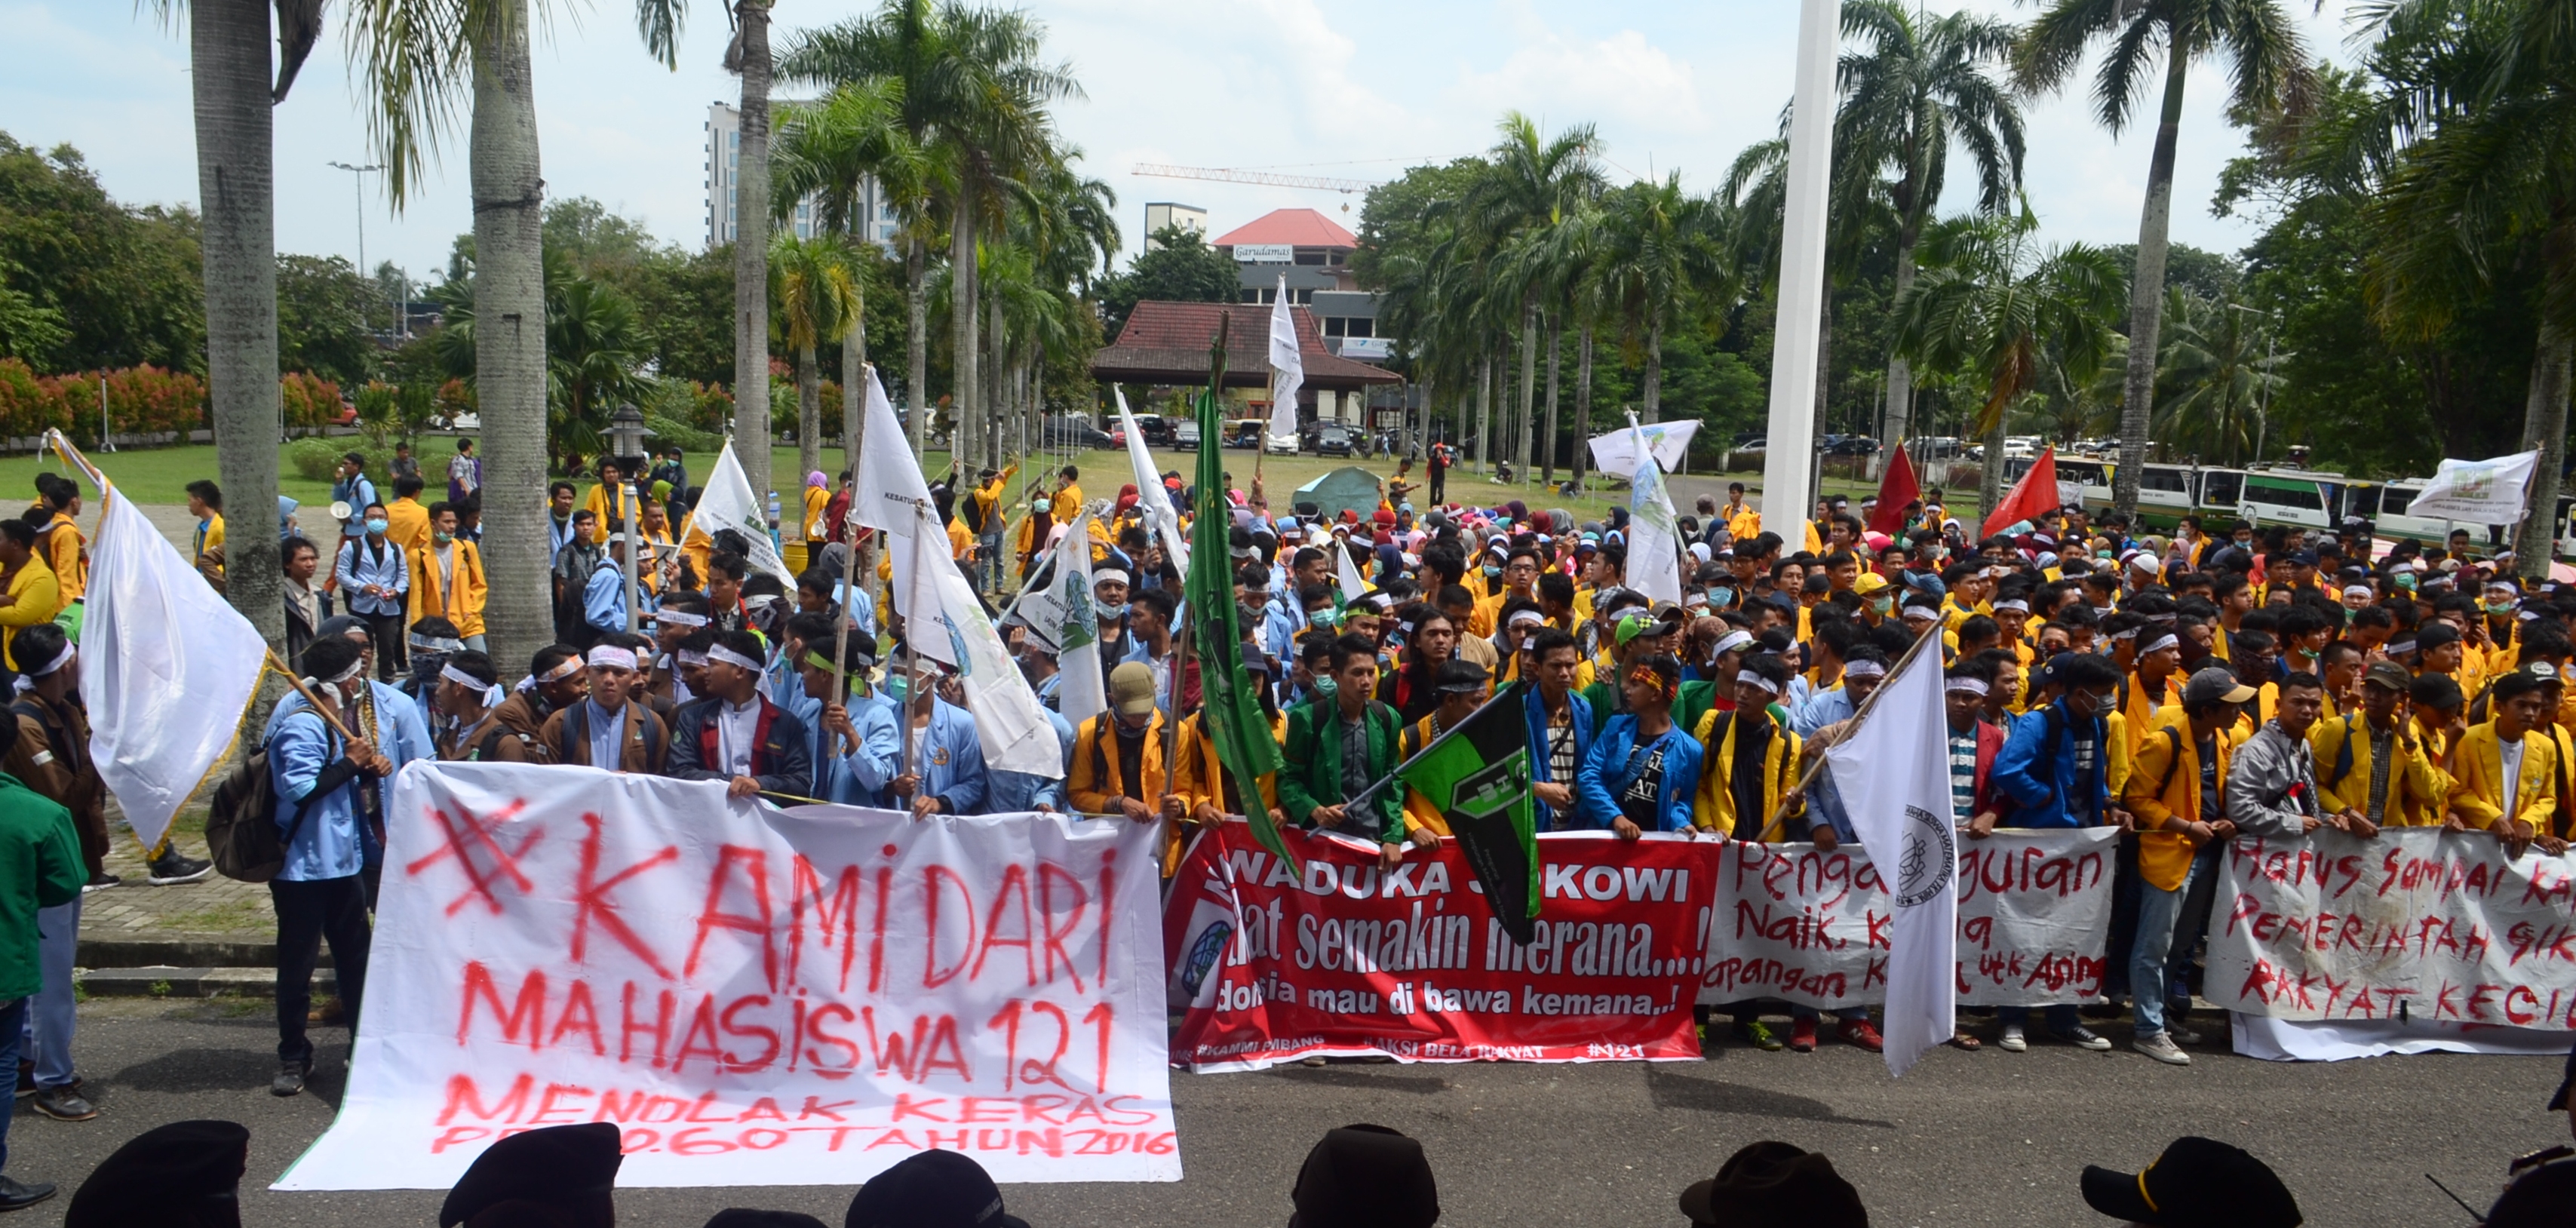 Ratusan mahasiswa yang tergabung dalam Aliansi Mahaiswa Sumsel saat melakukan Aksi Bela Rakyat di depan kantor DPRD Sumsel, kamis (12/02?